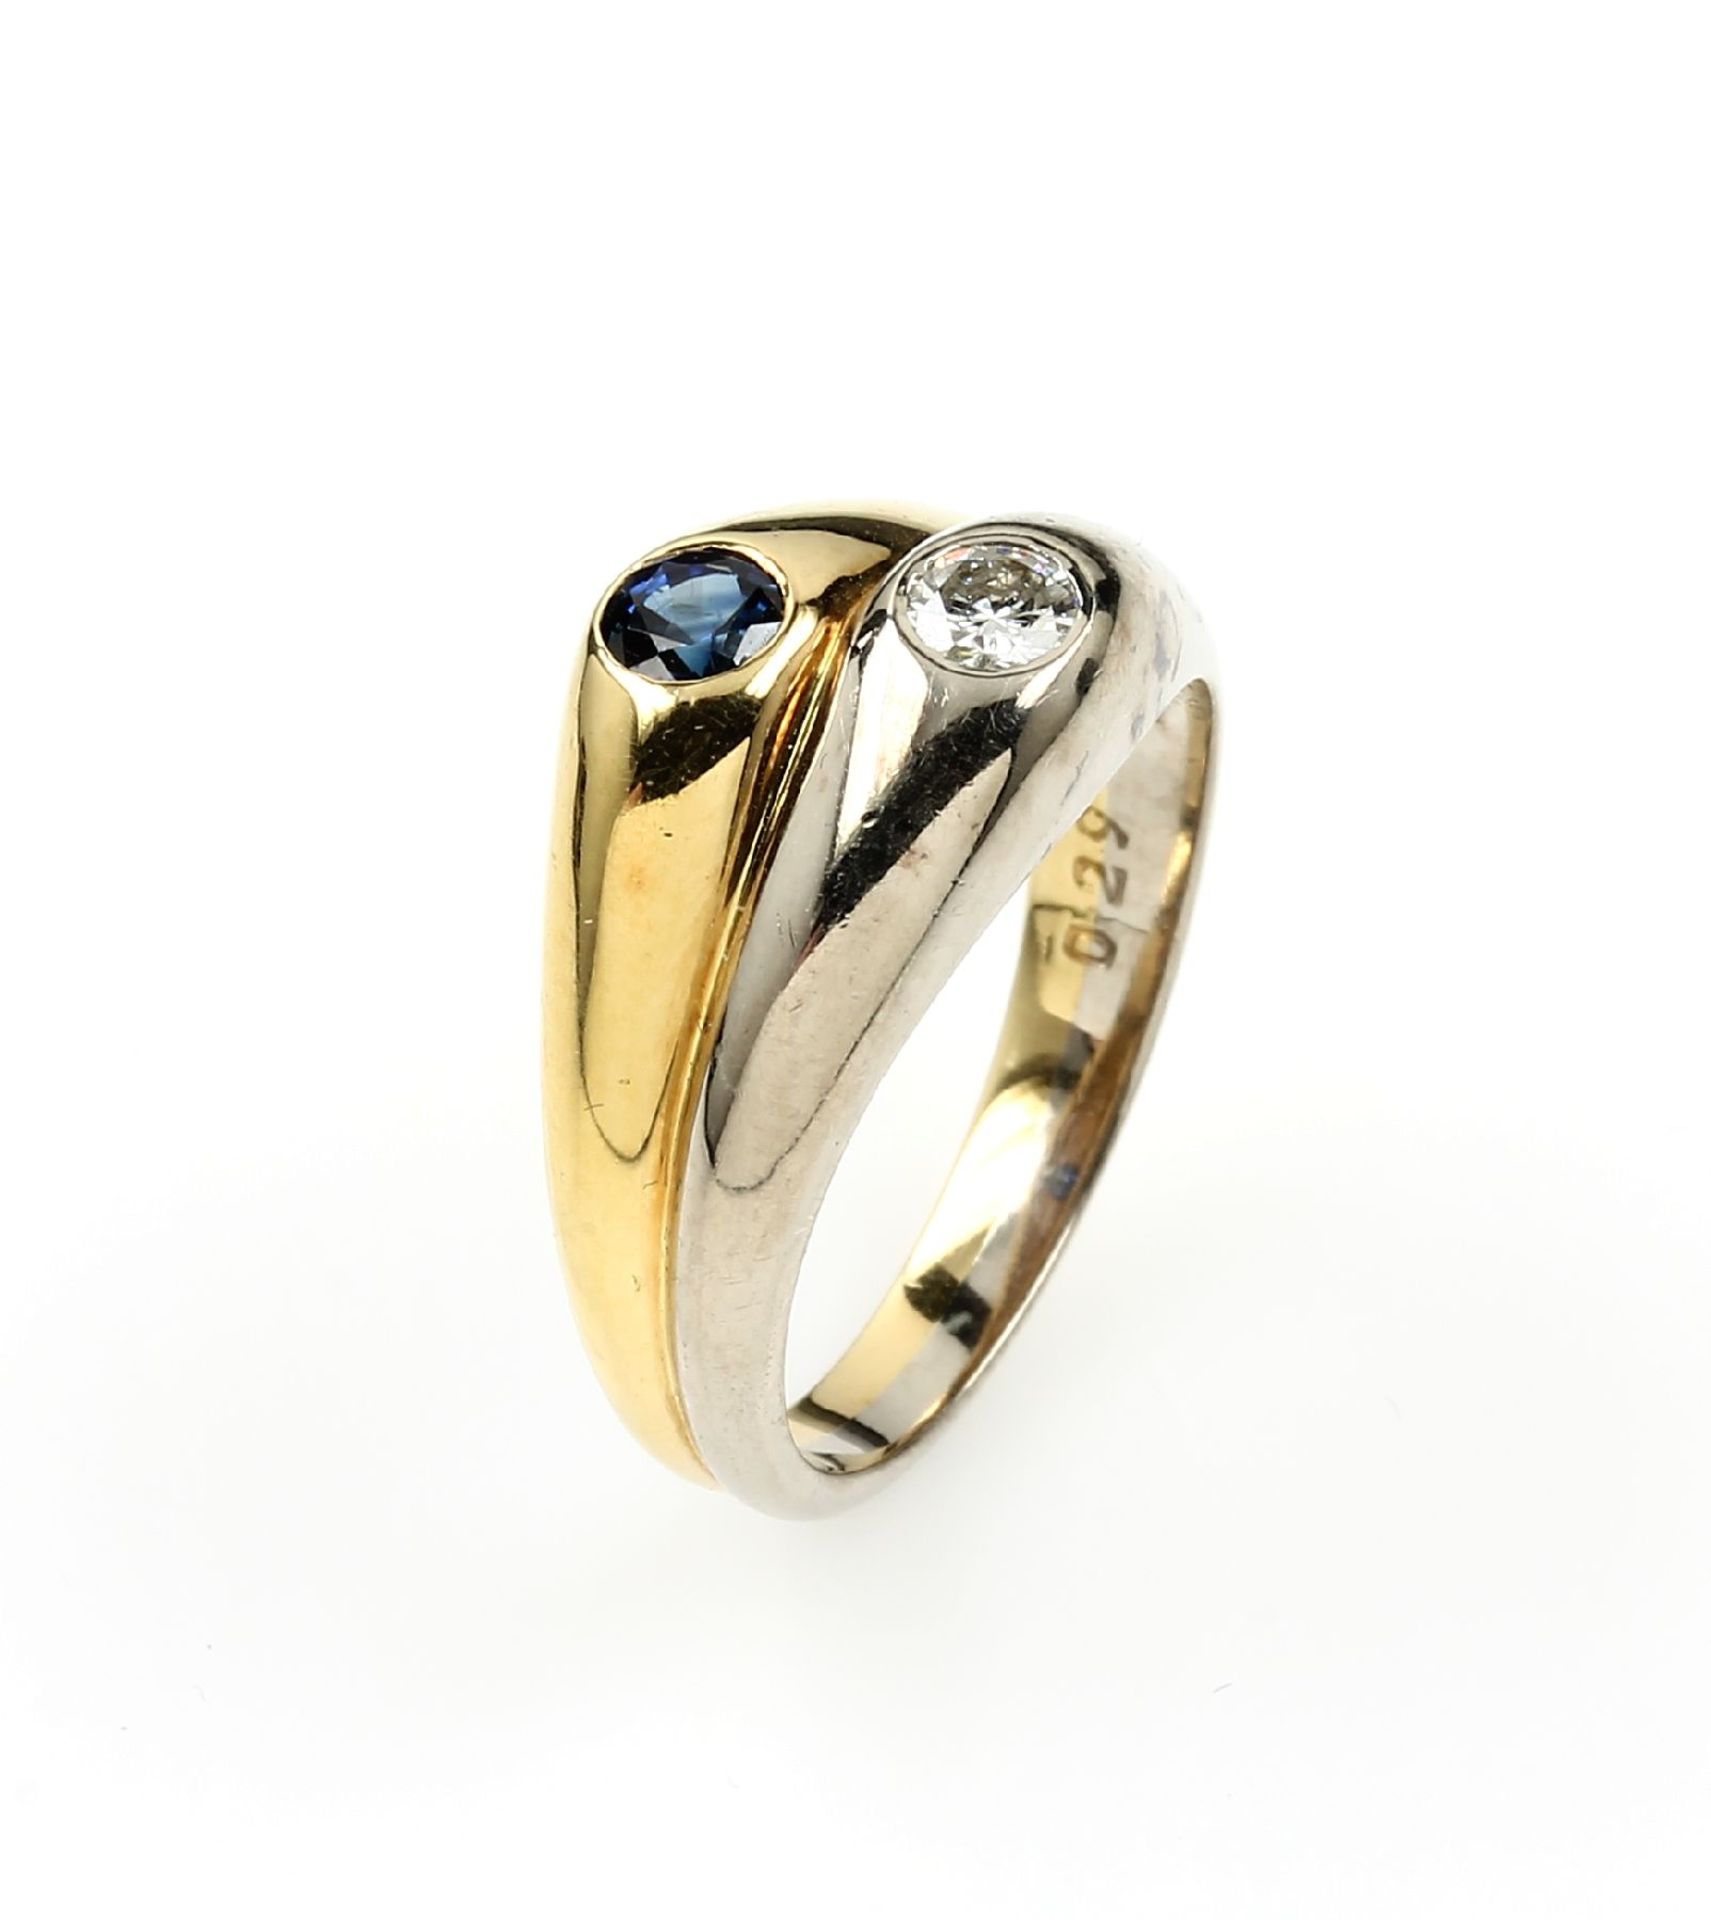 18 kt Gold Ring mit Saphir und Brillant, GG/WG 750/000, Brillant ca. 0.16 ct Weiß/si, rund facett.